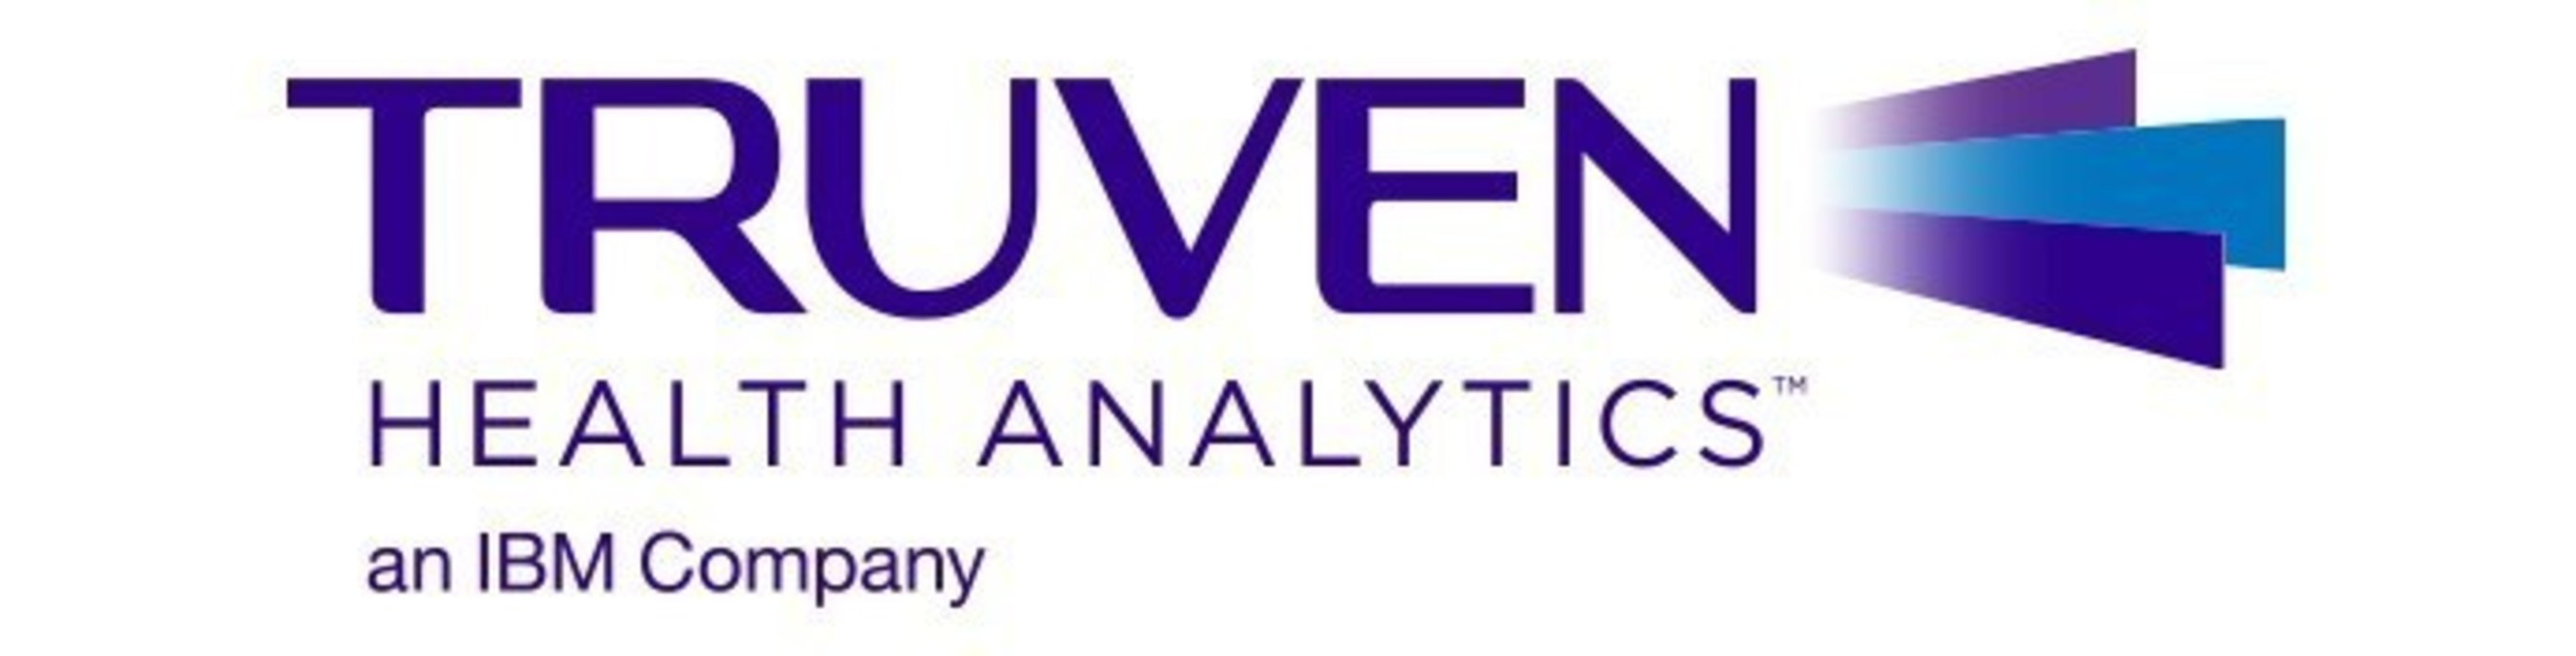 Truven_Health_Analytics_Logo